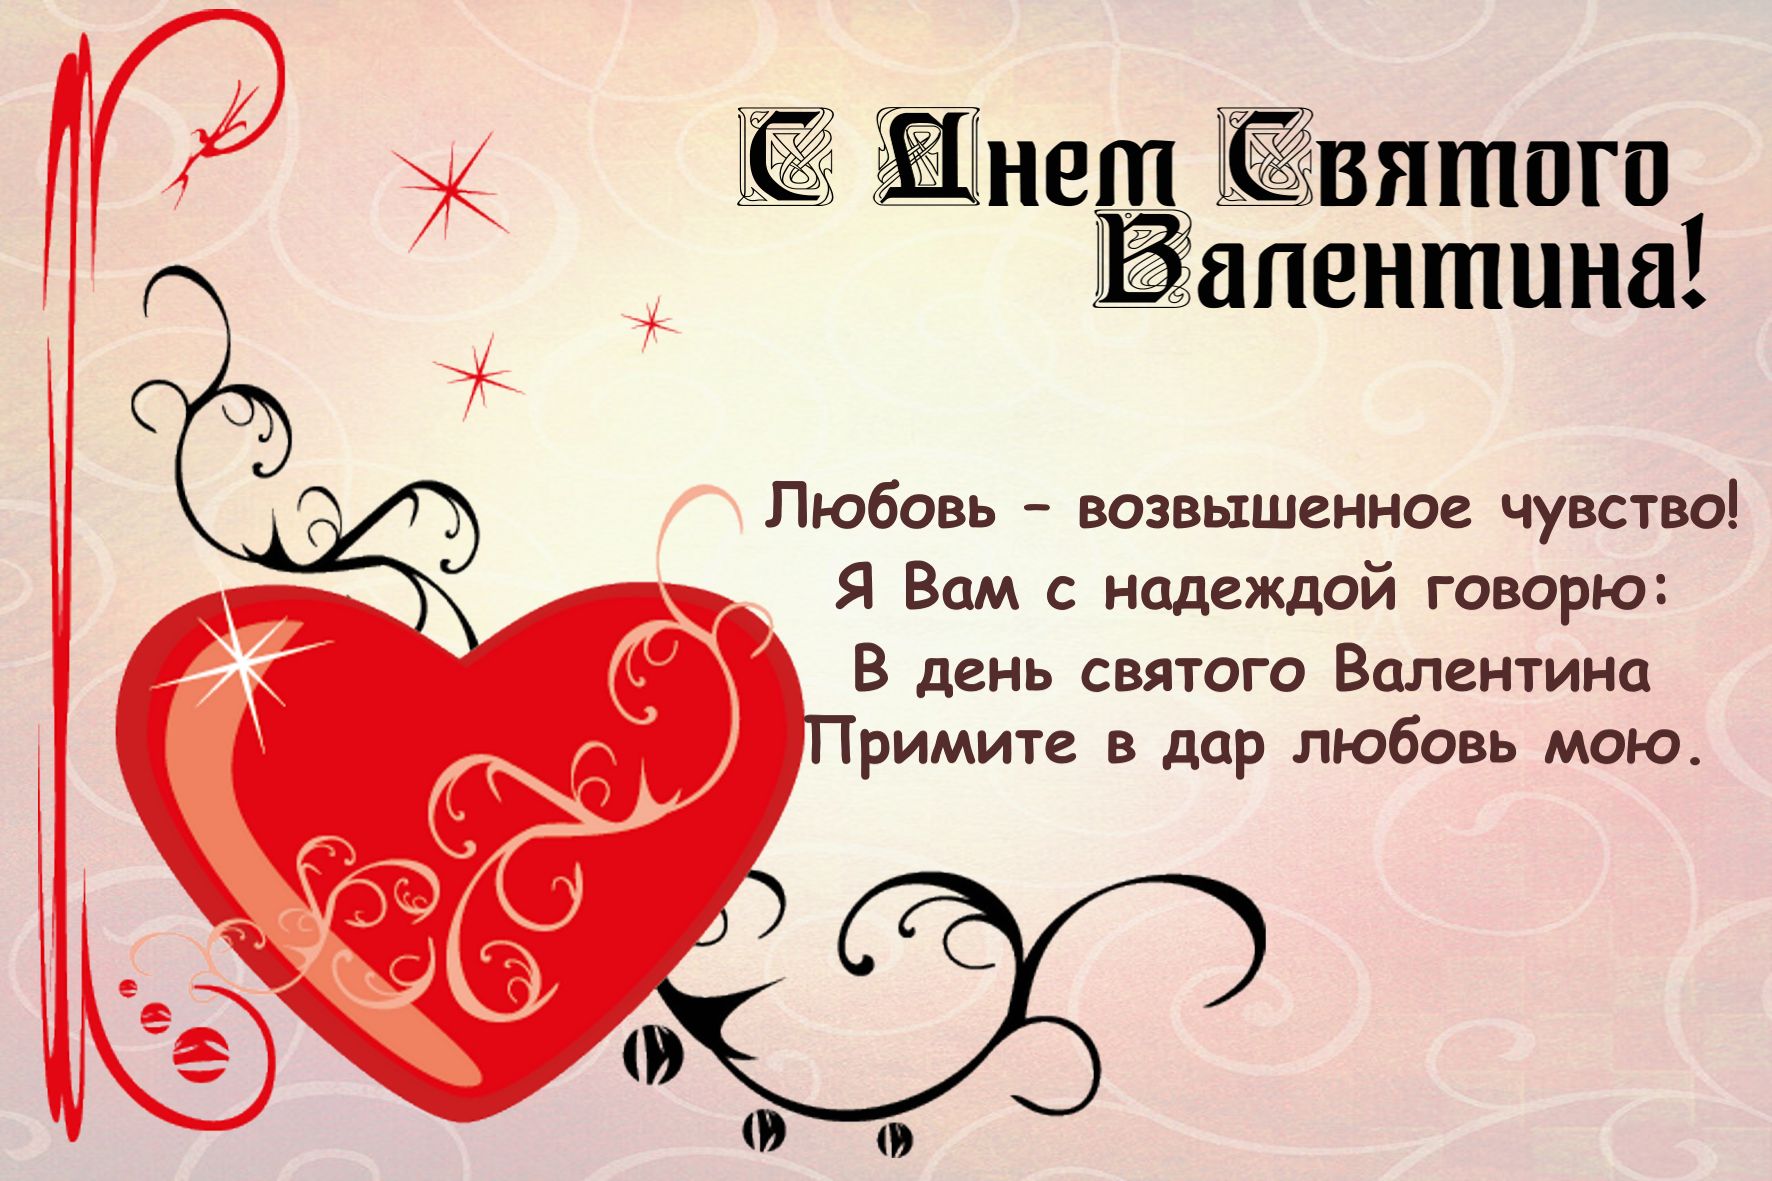 Порно фильм «Валентинки» Valentine's Stories с русским переводом